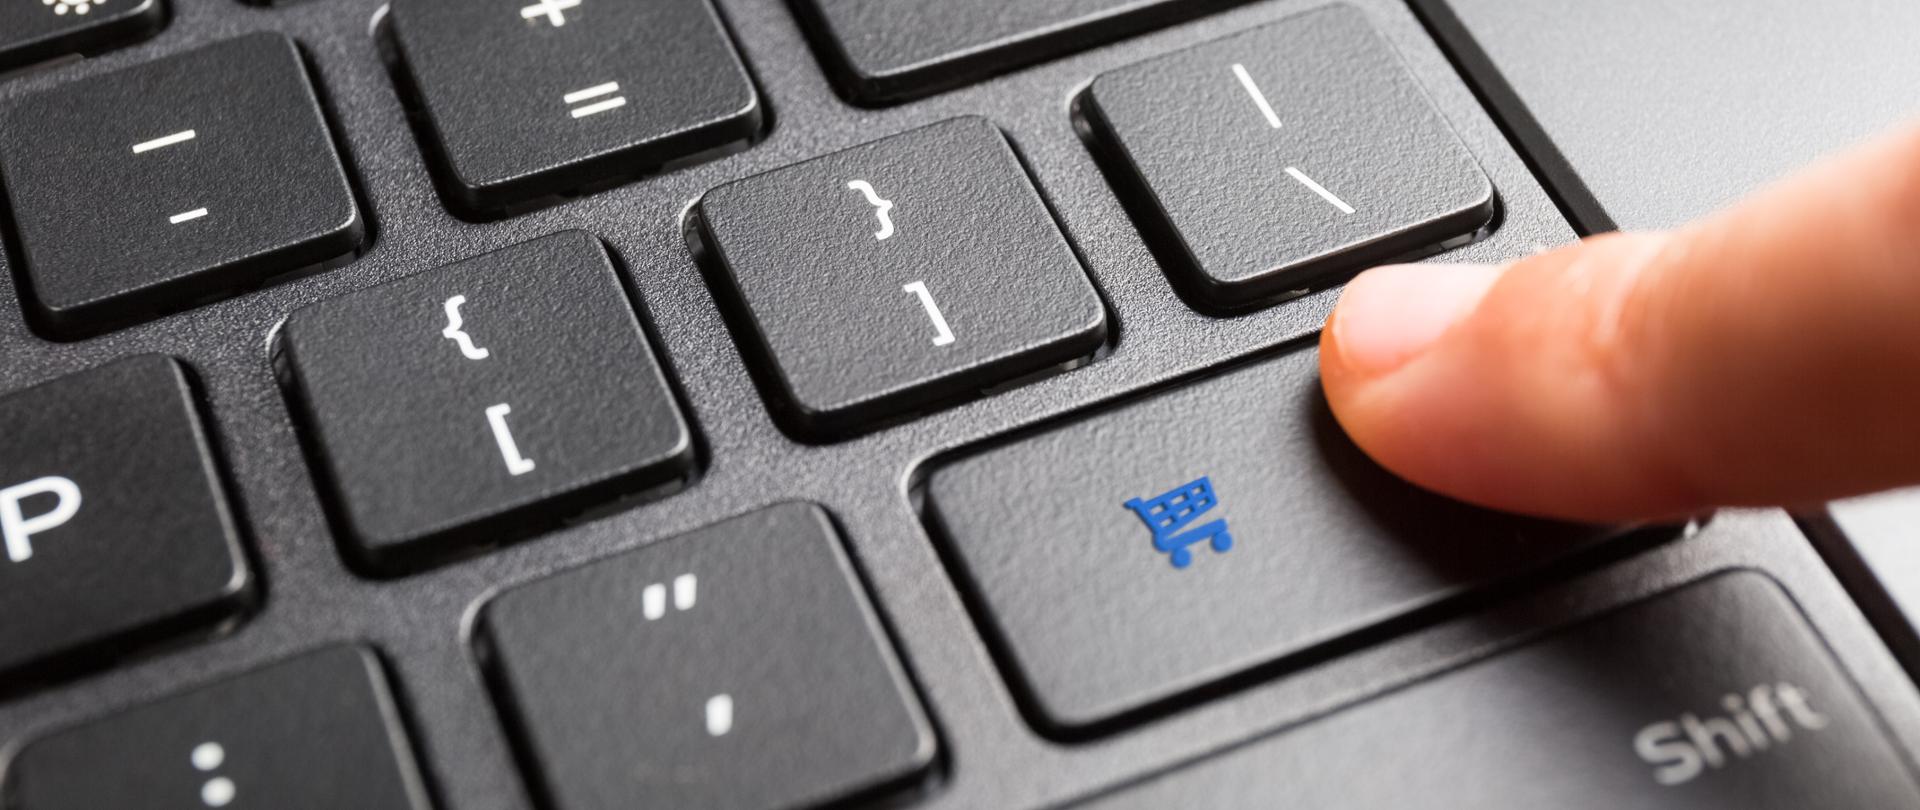 Palec wciskający na klawiaturze przycisk z symbolem zakupów